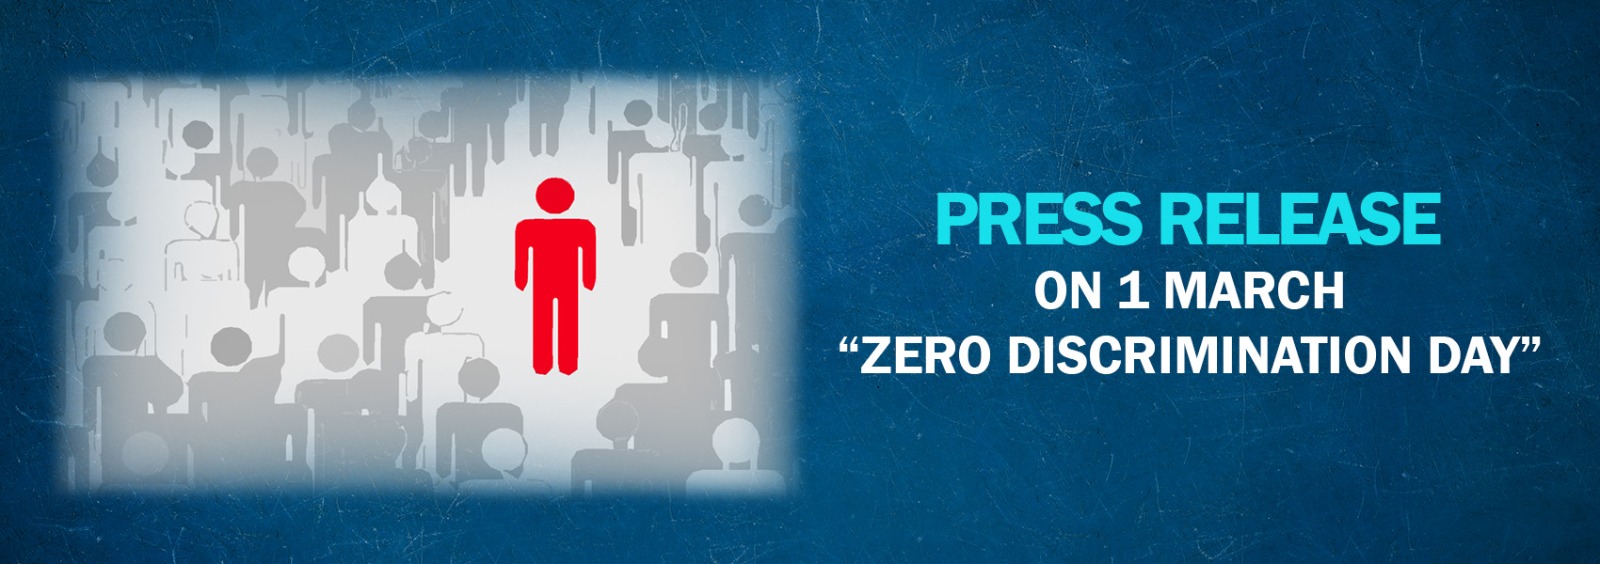 Press Release on 1 March “Zero Discrimination Day”